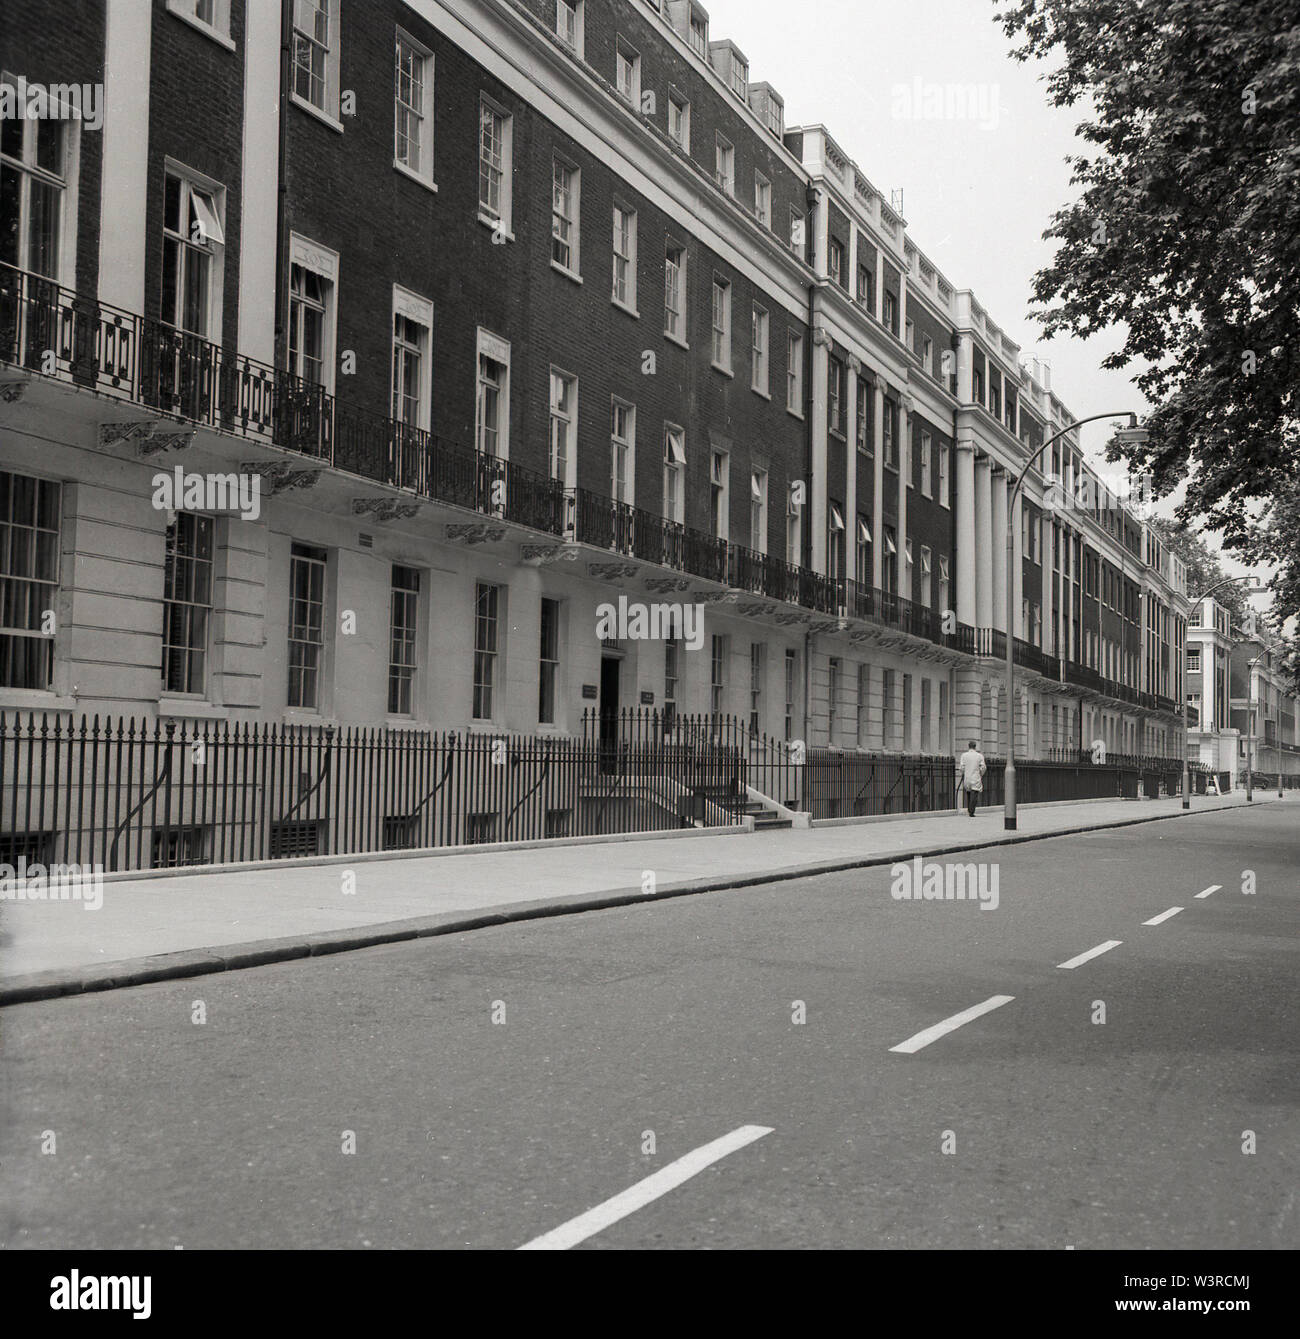 1960, historique, une vue sur les maisons dans la région de Gordon Square, Bloomsbury, Londres, Angleterre, une élégante terrasse de hauteur, six étages maisons géorgiennes dans l'Estate. Construit par Thomas Cubitt entre 1820-1850 pour le duc de Bedford et le nom de sa deuxième femme. Le célèbre économiste John Maynard Keynes a vécu au n° 46, et avant que l'écrivain Viginia Woolf. Banque D'Images